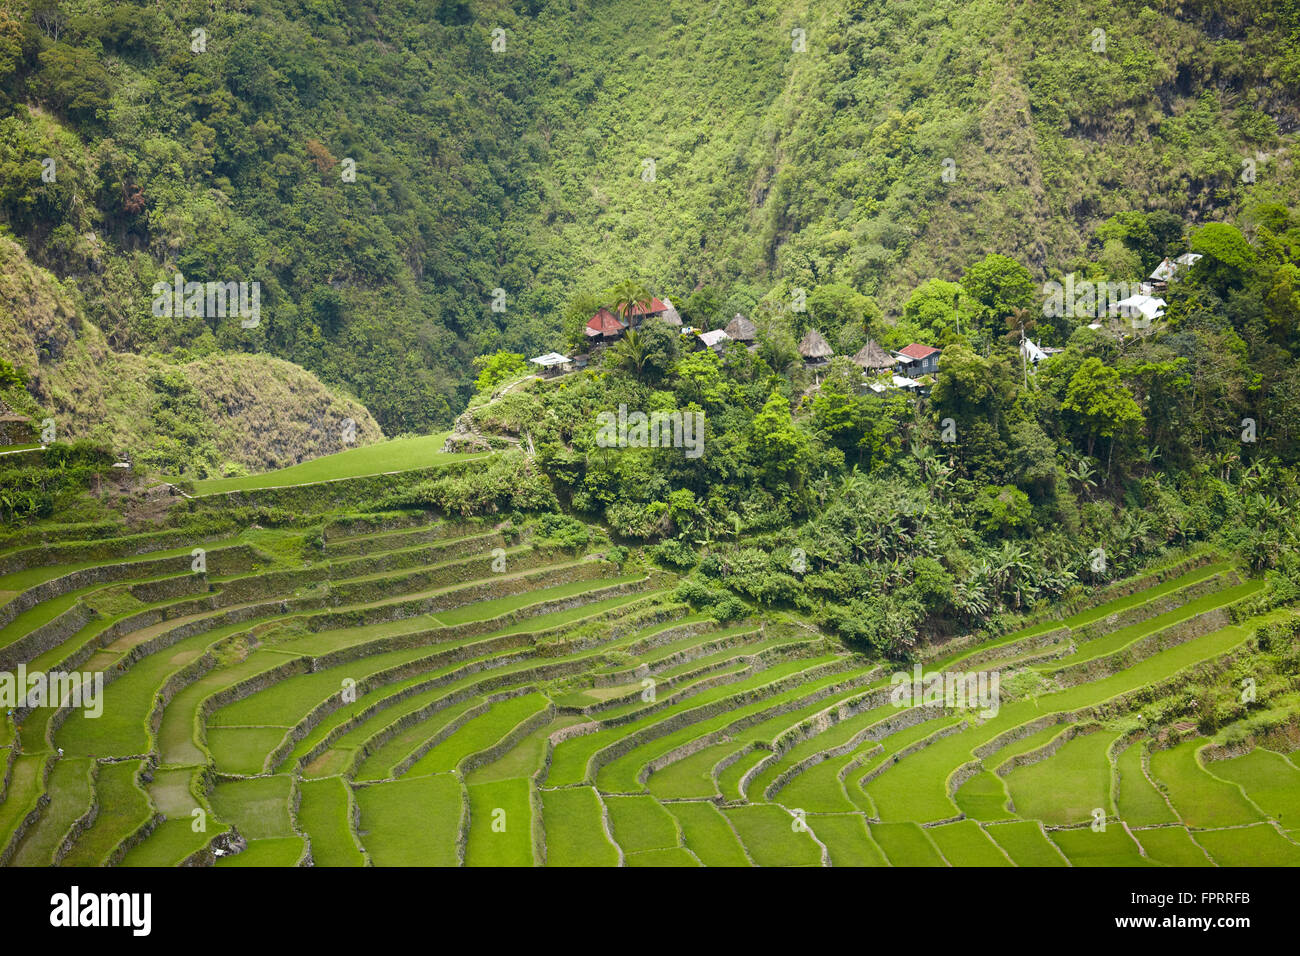 Philippines, île de Luzon, Cordillères, province d'Ifugao, Banaue, village de Batad. Site classé au patrimoine mondial de l'UNESCO : terrasses rizières des Cordillères Philippines Banque D'Images